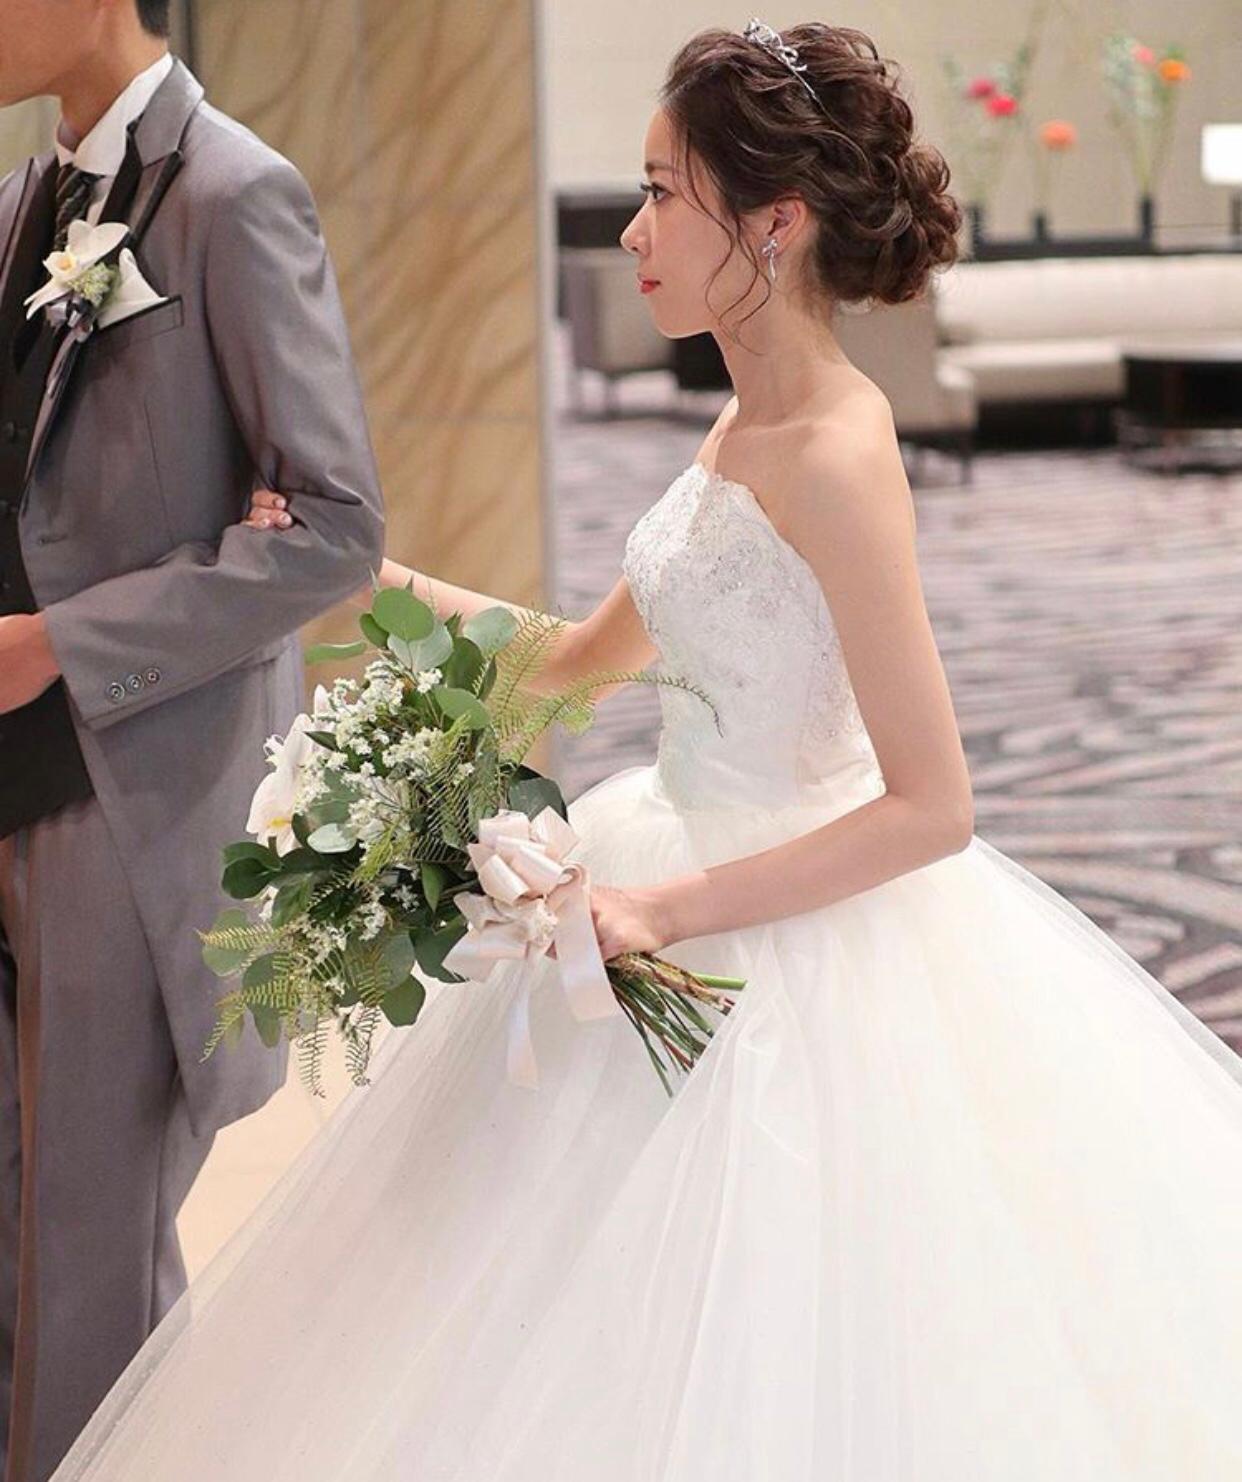 婚禮統籌師Queeny Ng之婚禮統籌師專欄: 婚紗創造出獨特的款式